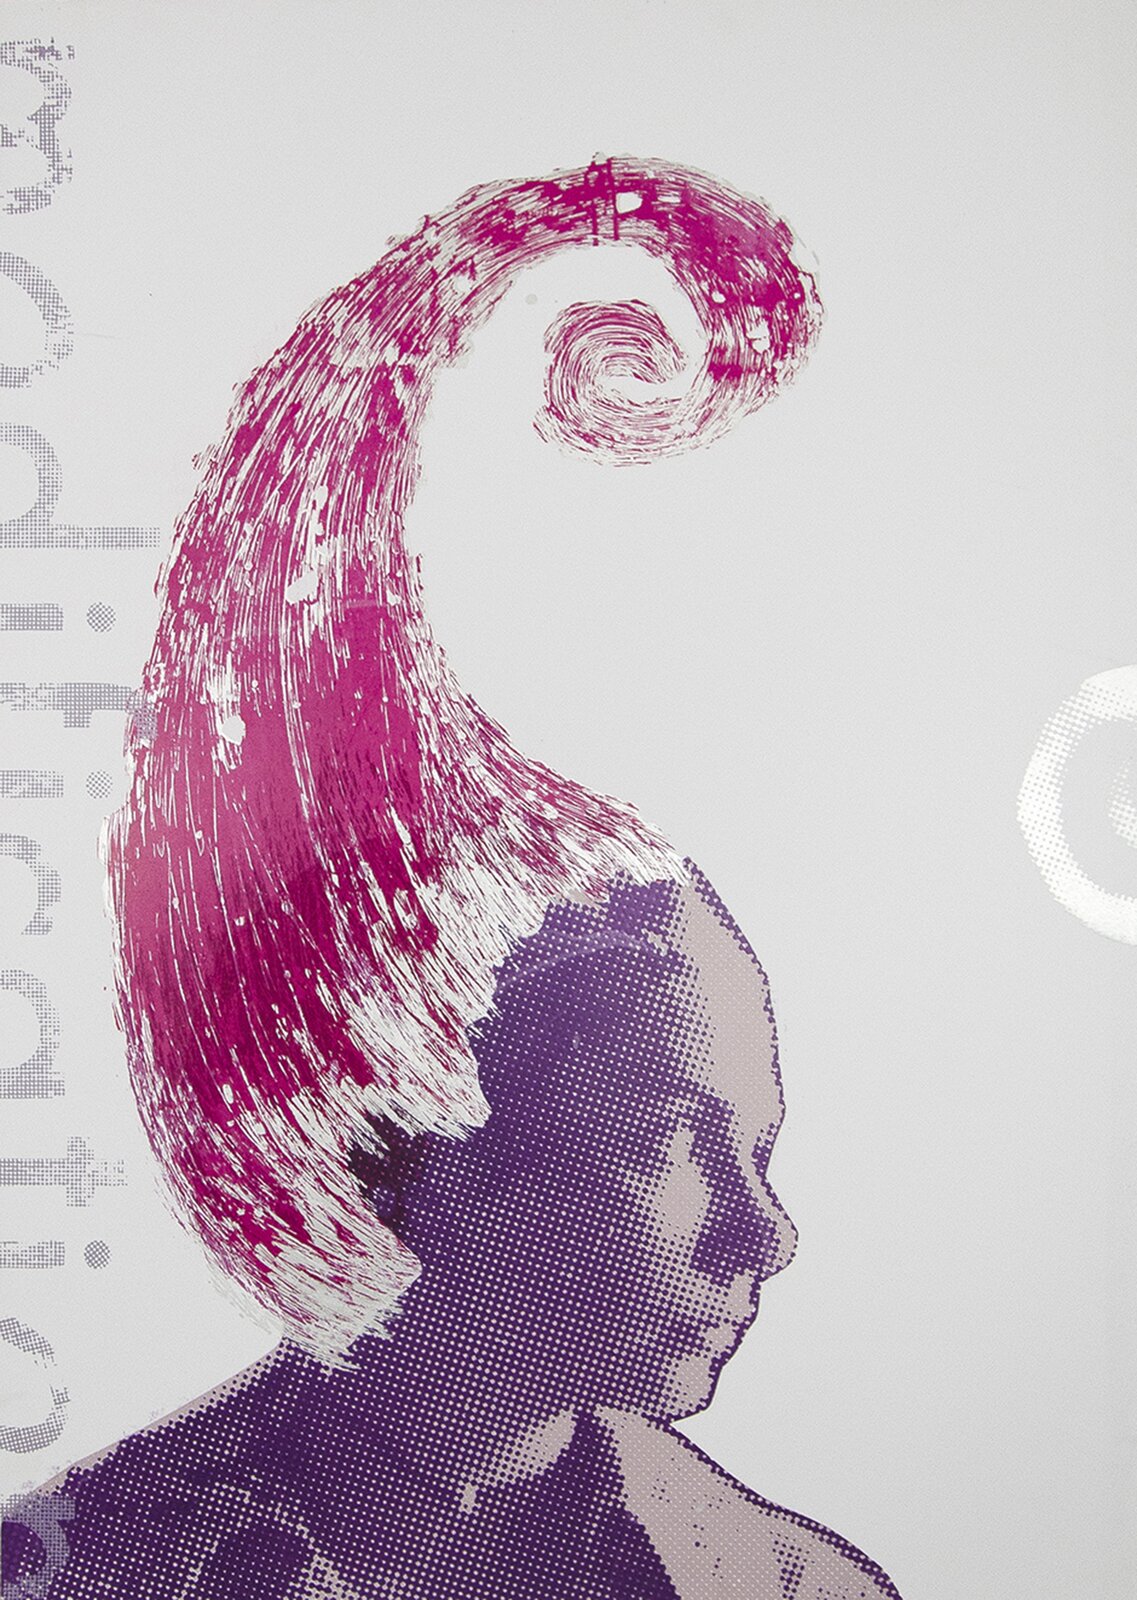 Ilustracja przedstawia obraz Agaty Dworzak‑Subocz „Portrait – pink”. Ukazuje głowę dziewczyny z profilu. Jest ona pozbawiona włosów, a zamiast nich ma różowe, uniesiony do góry, spiralnie zakręcony kształt z linii. Po lewej stronie zamieszczony jest obcięty napis.